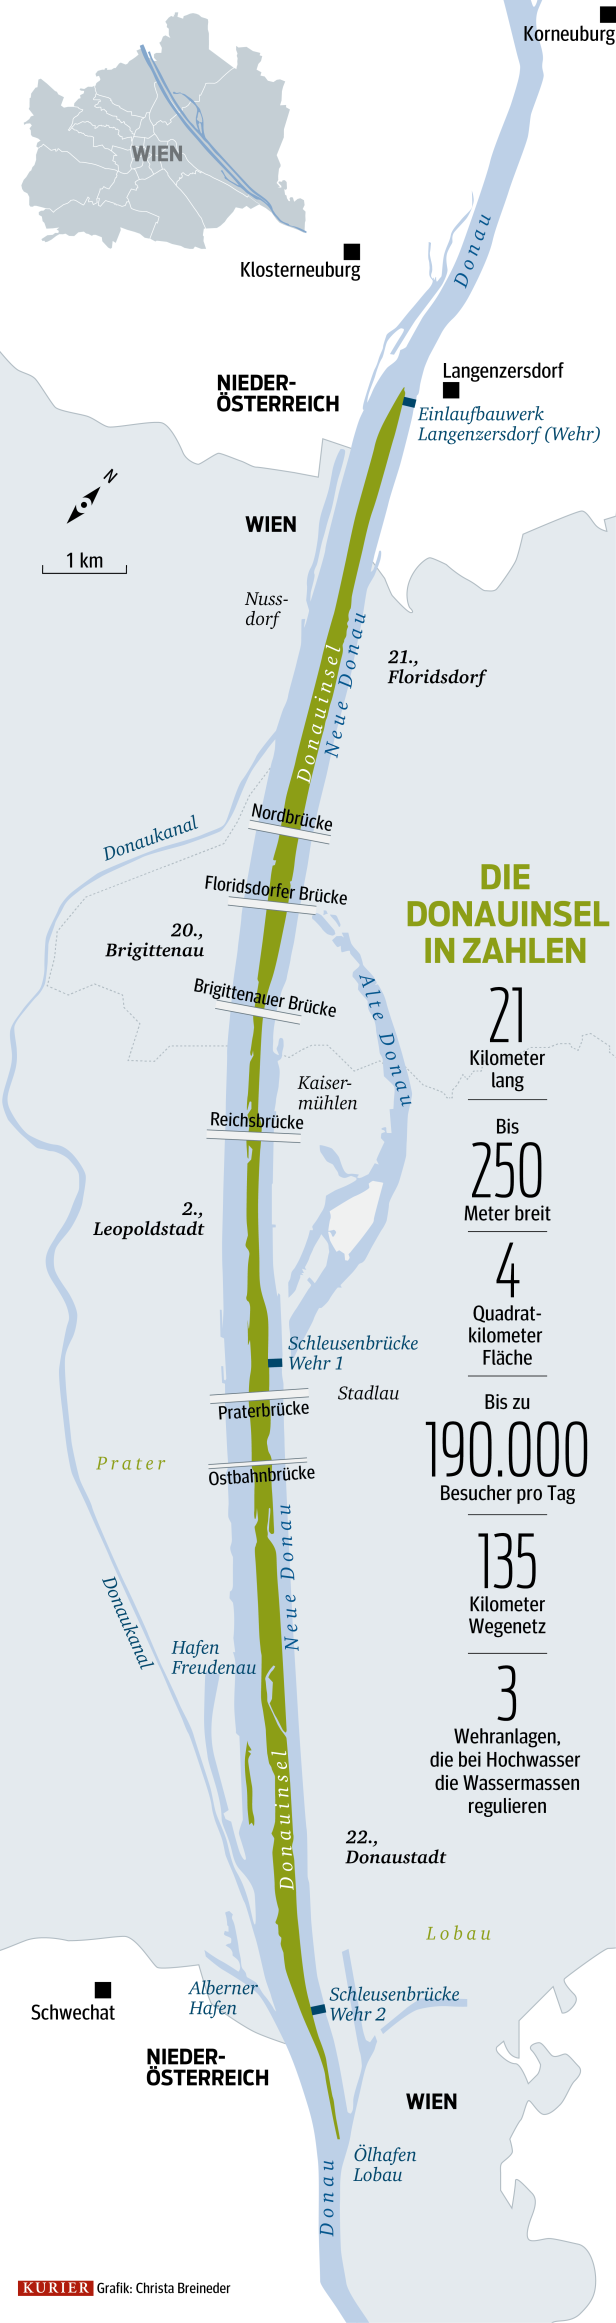 30 Jahre Donauinsel: Vom Abfallprodukt zur Hauptattraktion